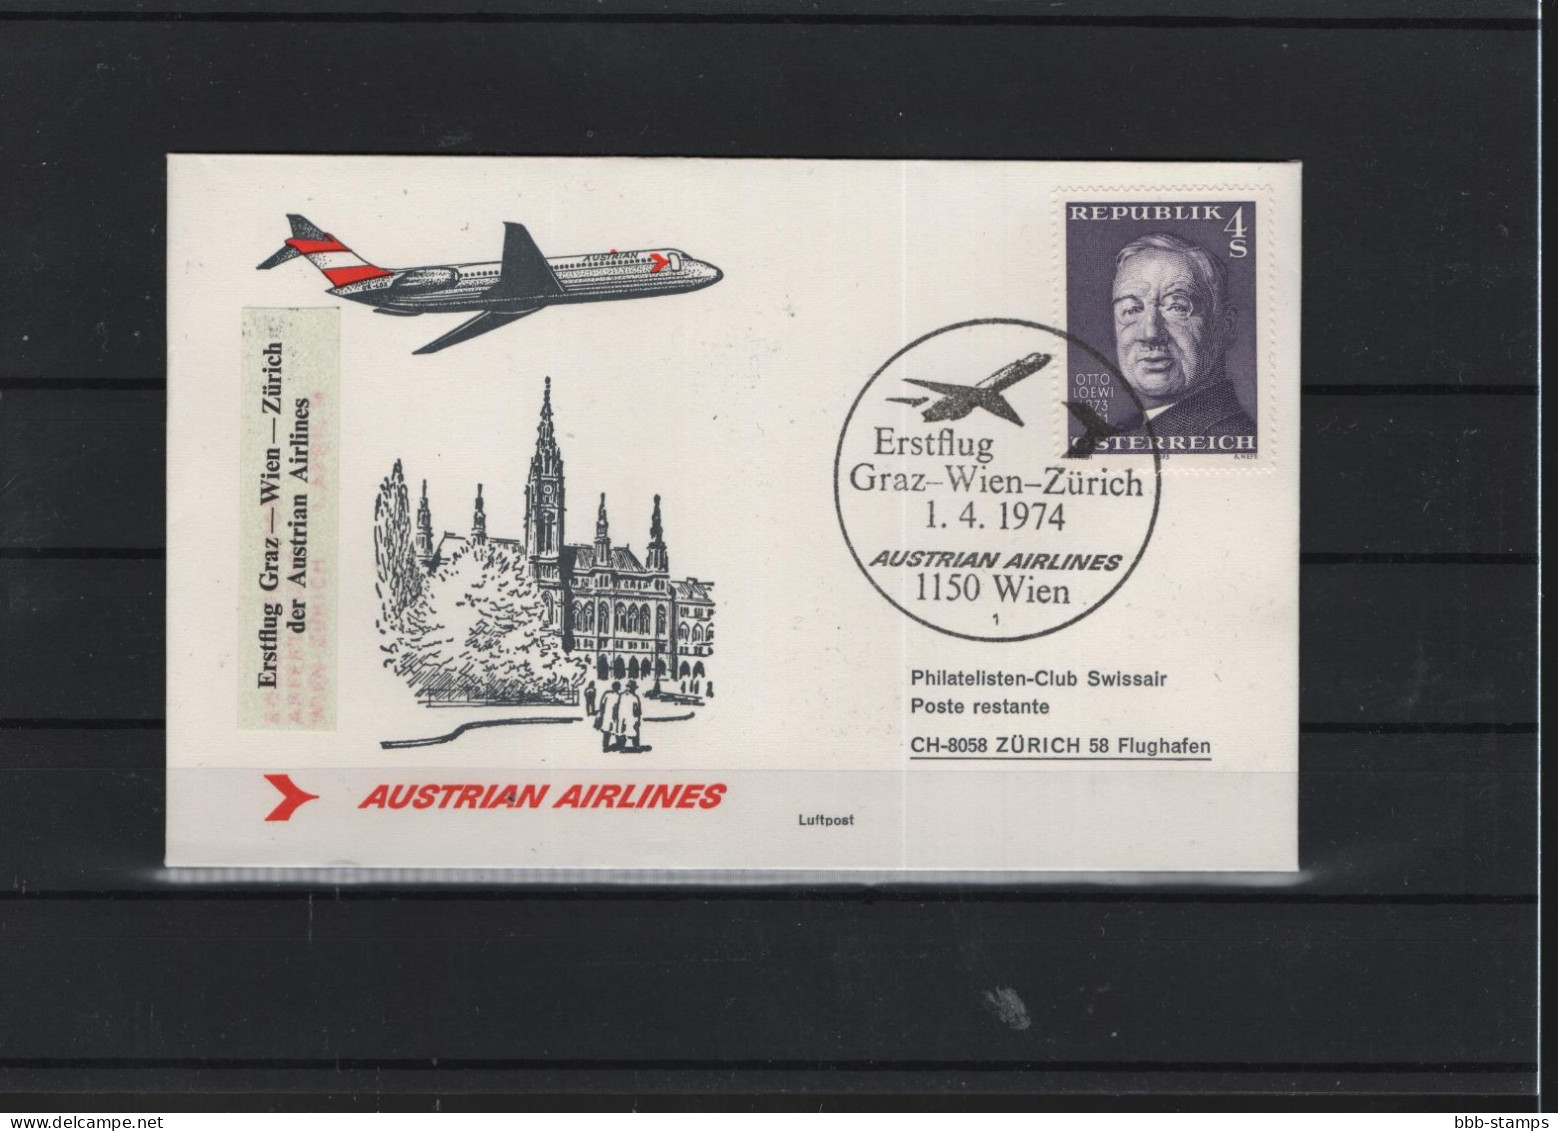 Schweiz Luftpost FFC AUA  1.4.1974 Graz - Wien - Zürich - Eerste Vluchten